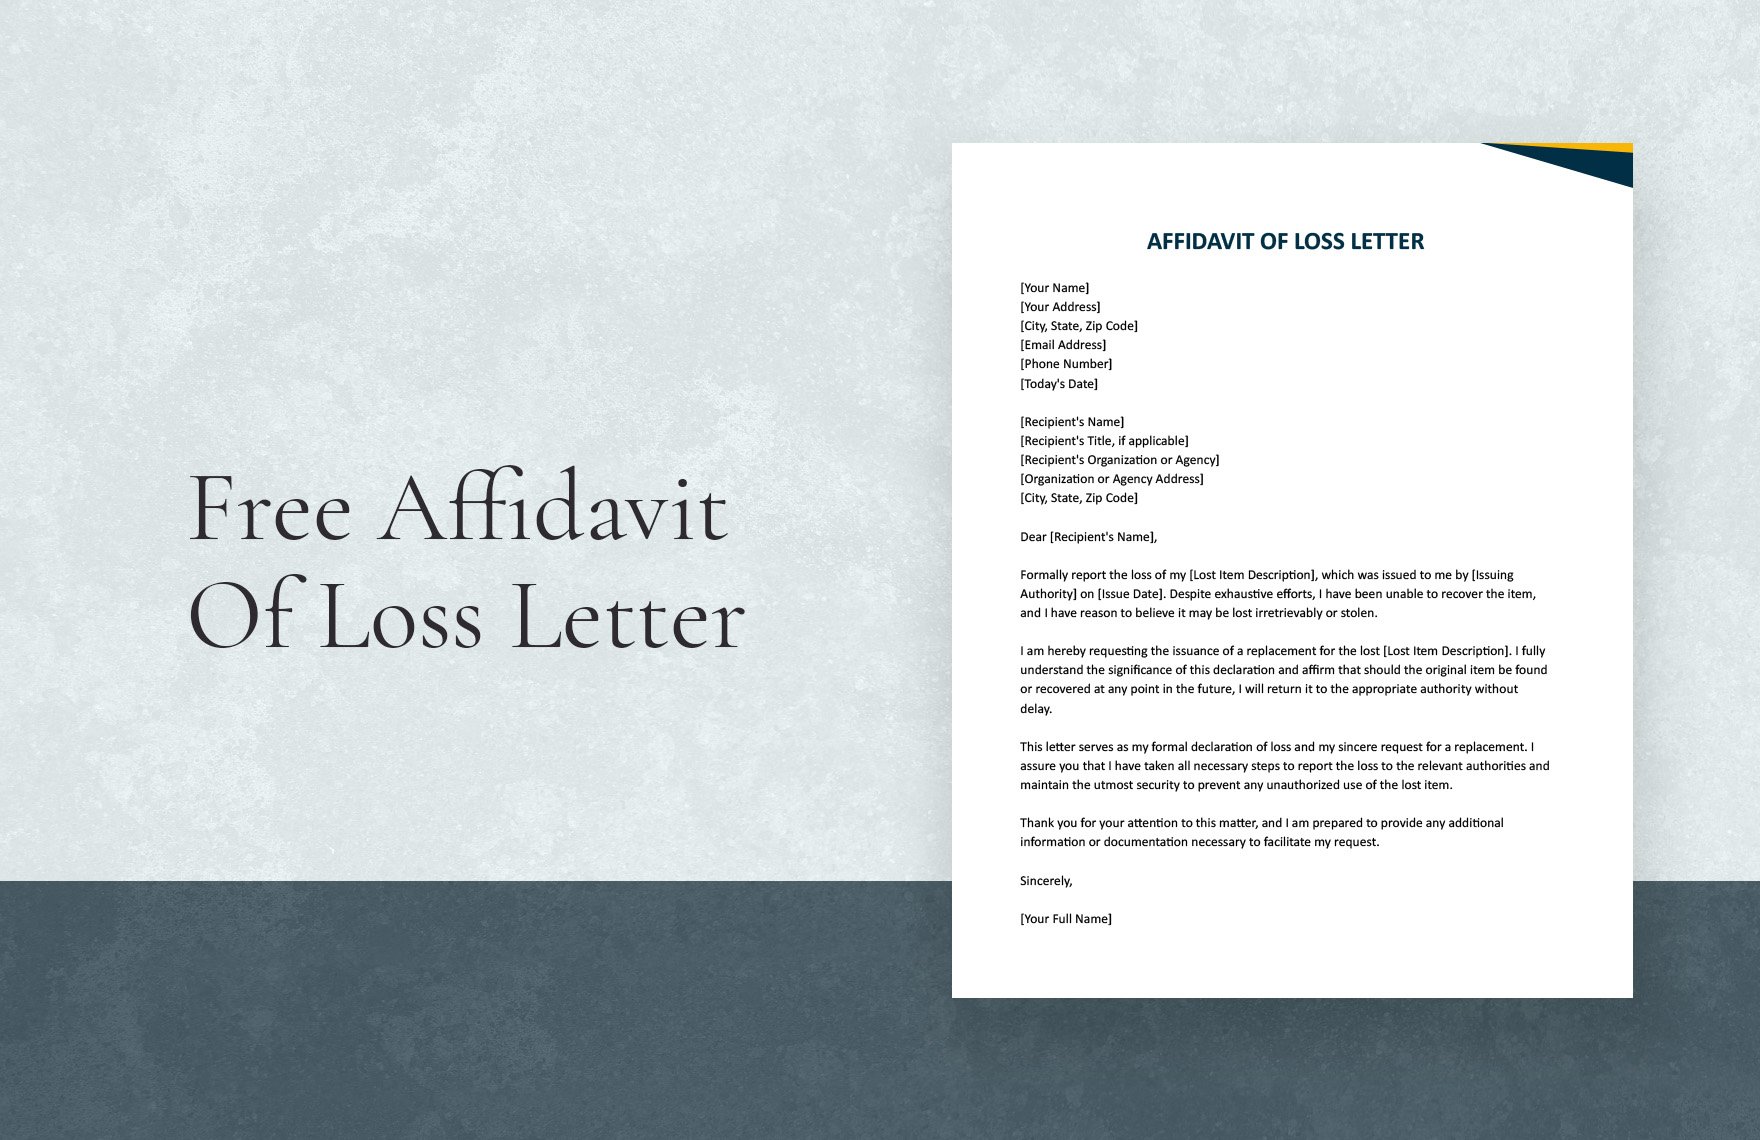 Affidavit Of Loss Letter in Word, Google Docs